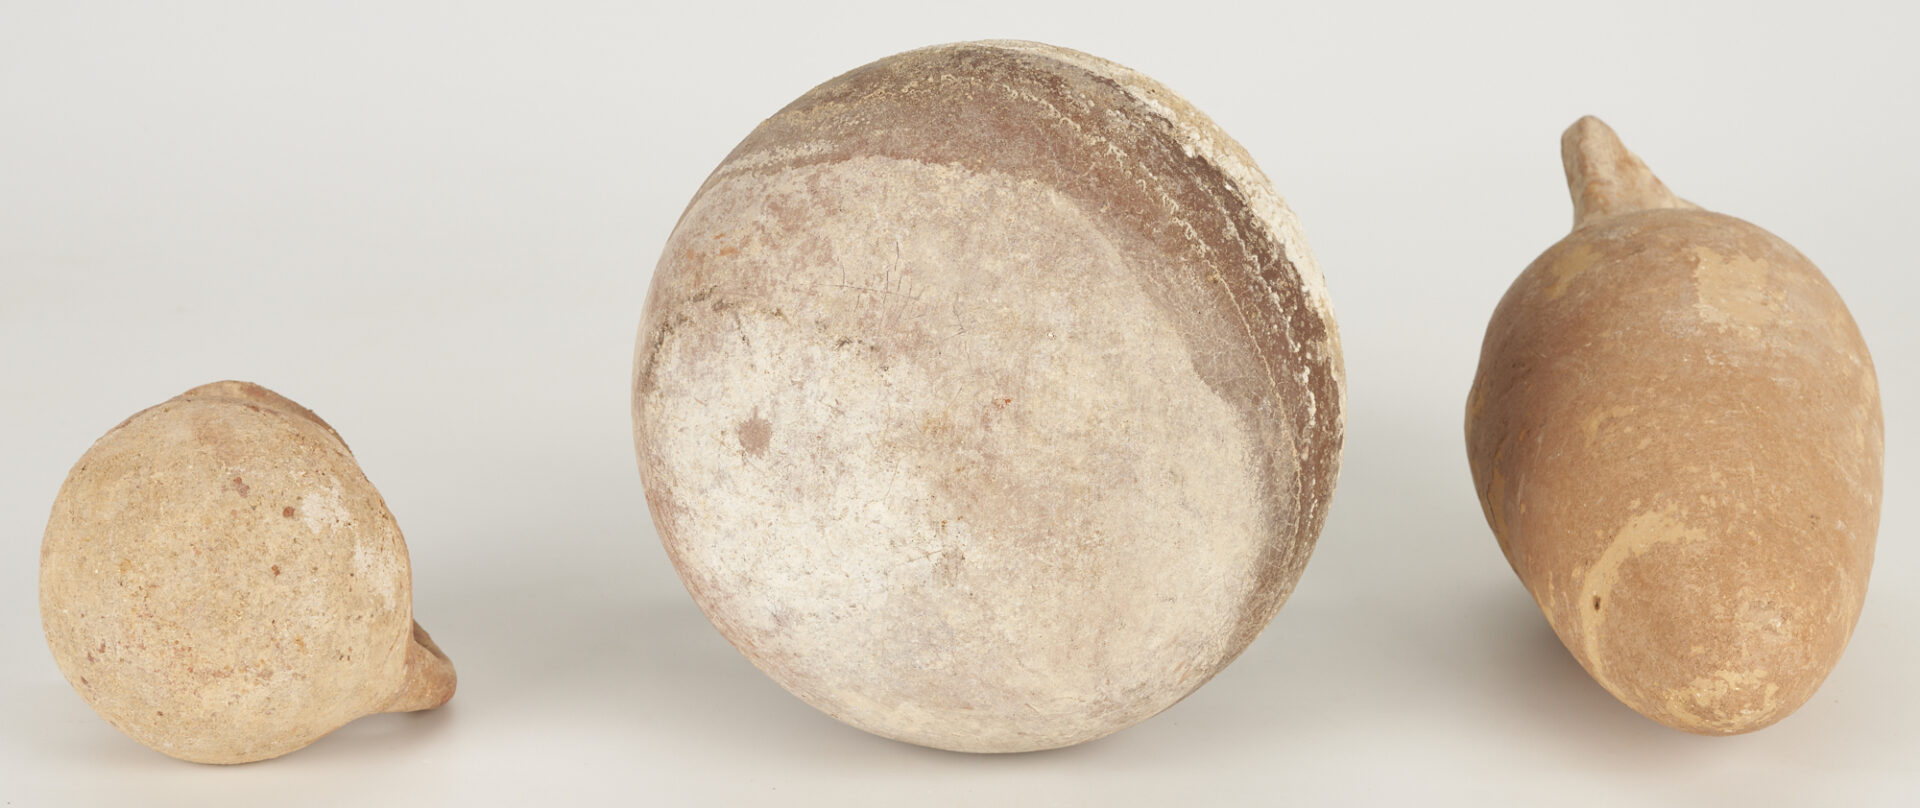 Lot 254: 3 Ancient Israeli Ceramic Vessels incl. Amphora Vase